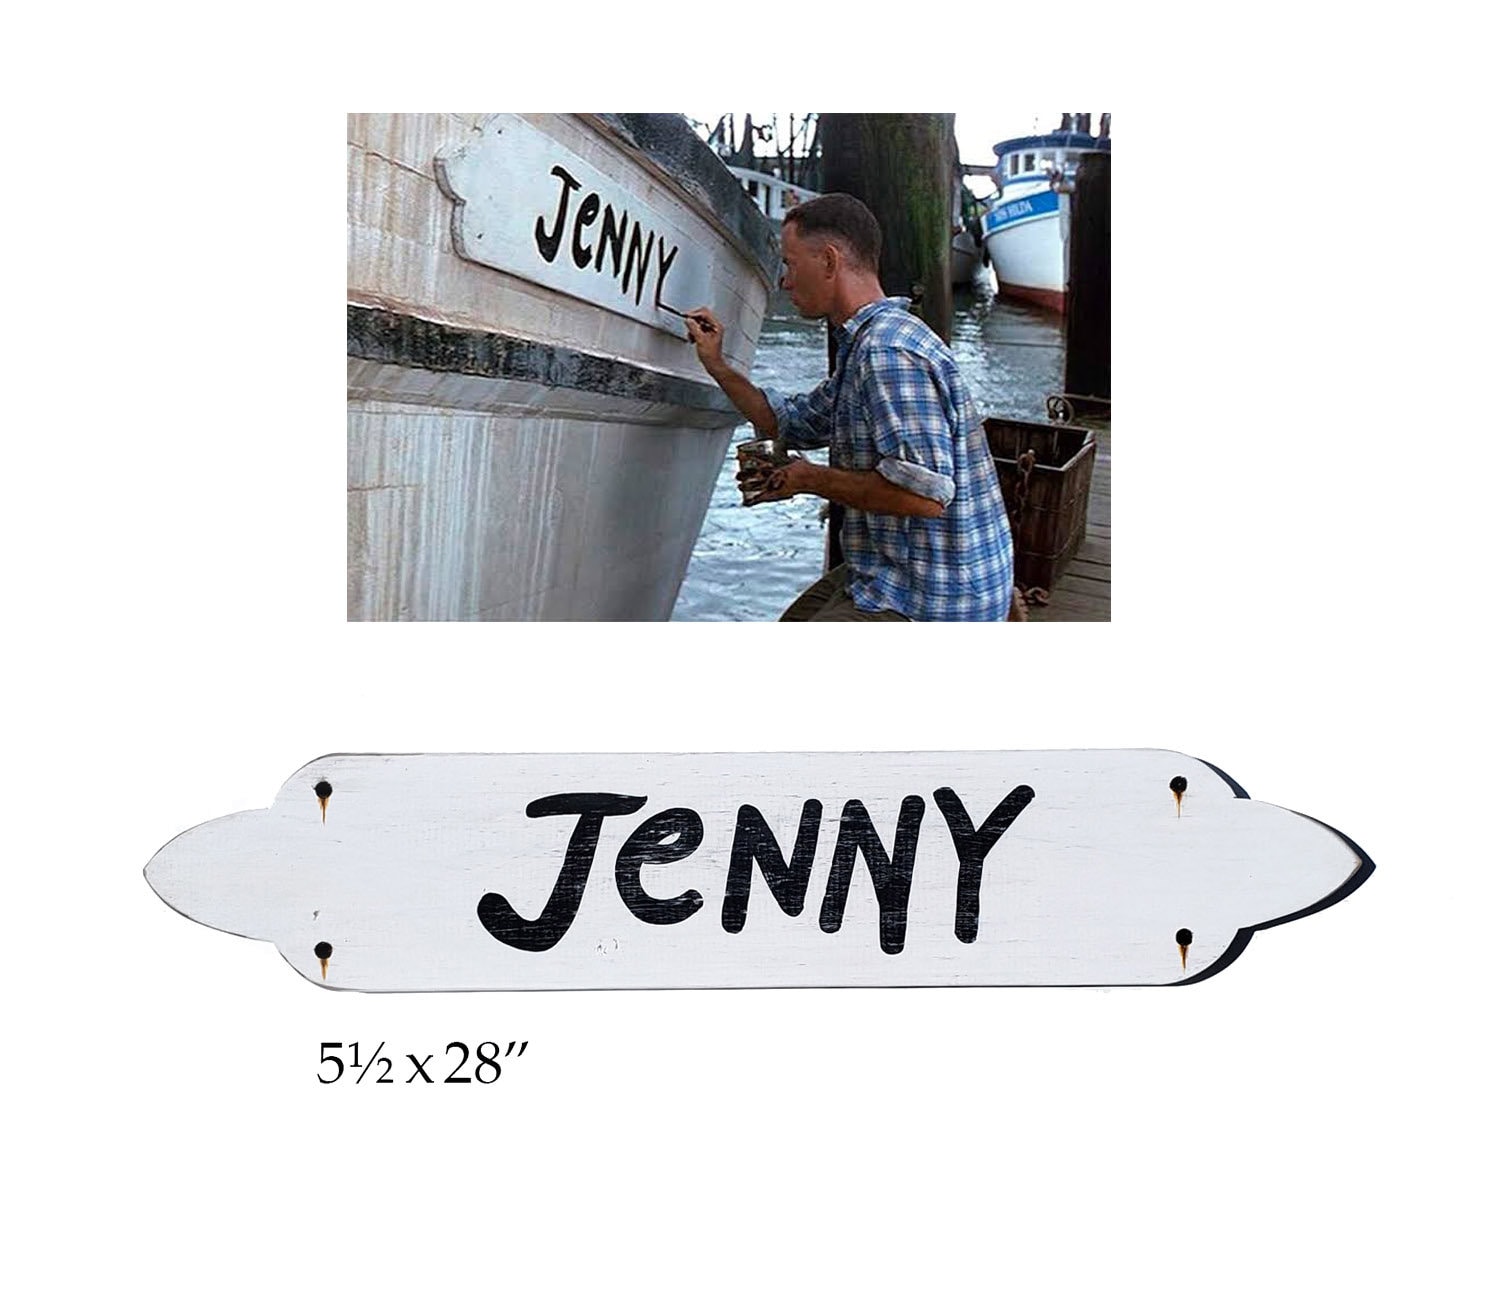 forrest gump jenny boat